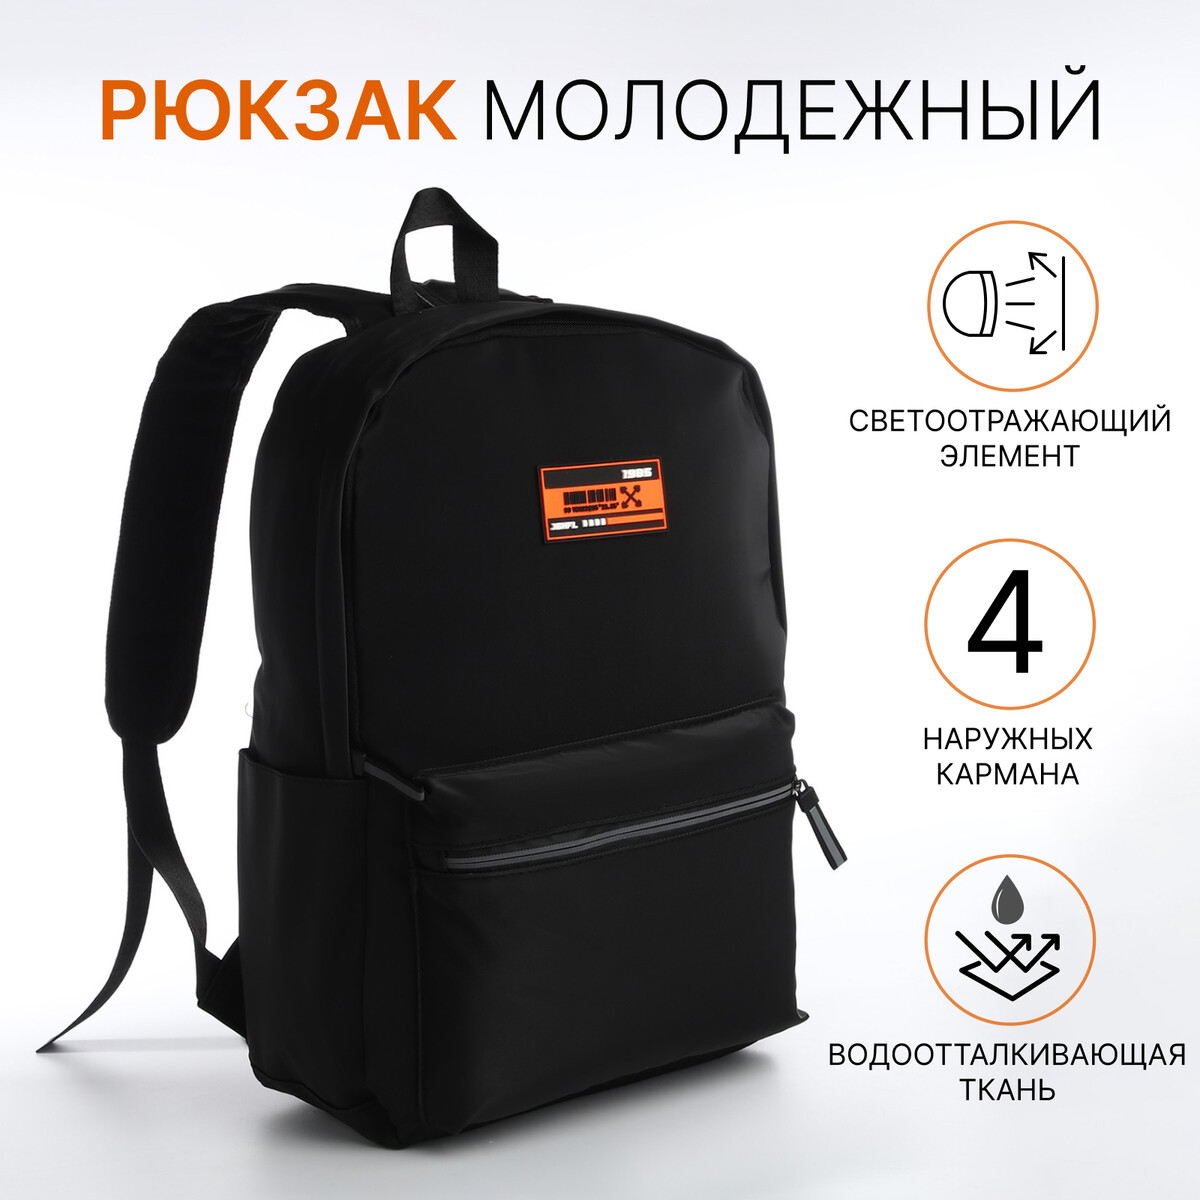 Рюкзак молодежный из текстиля на молнии, 4 кармана, цвет черный/оранжевый pixel bag рюкзак с led дисплеем pixel plus orange оранжевый